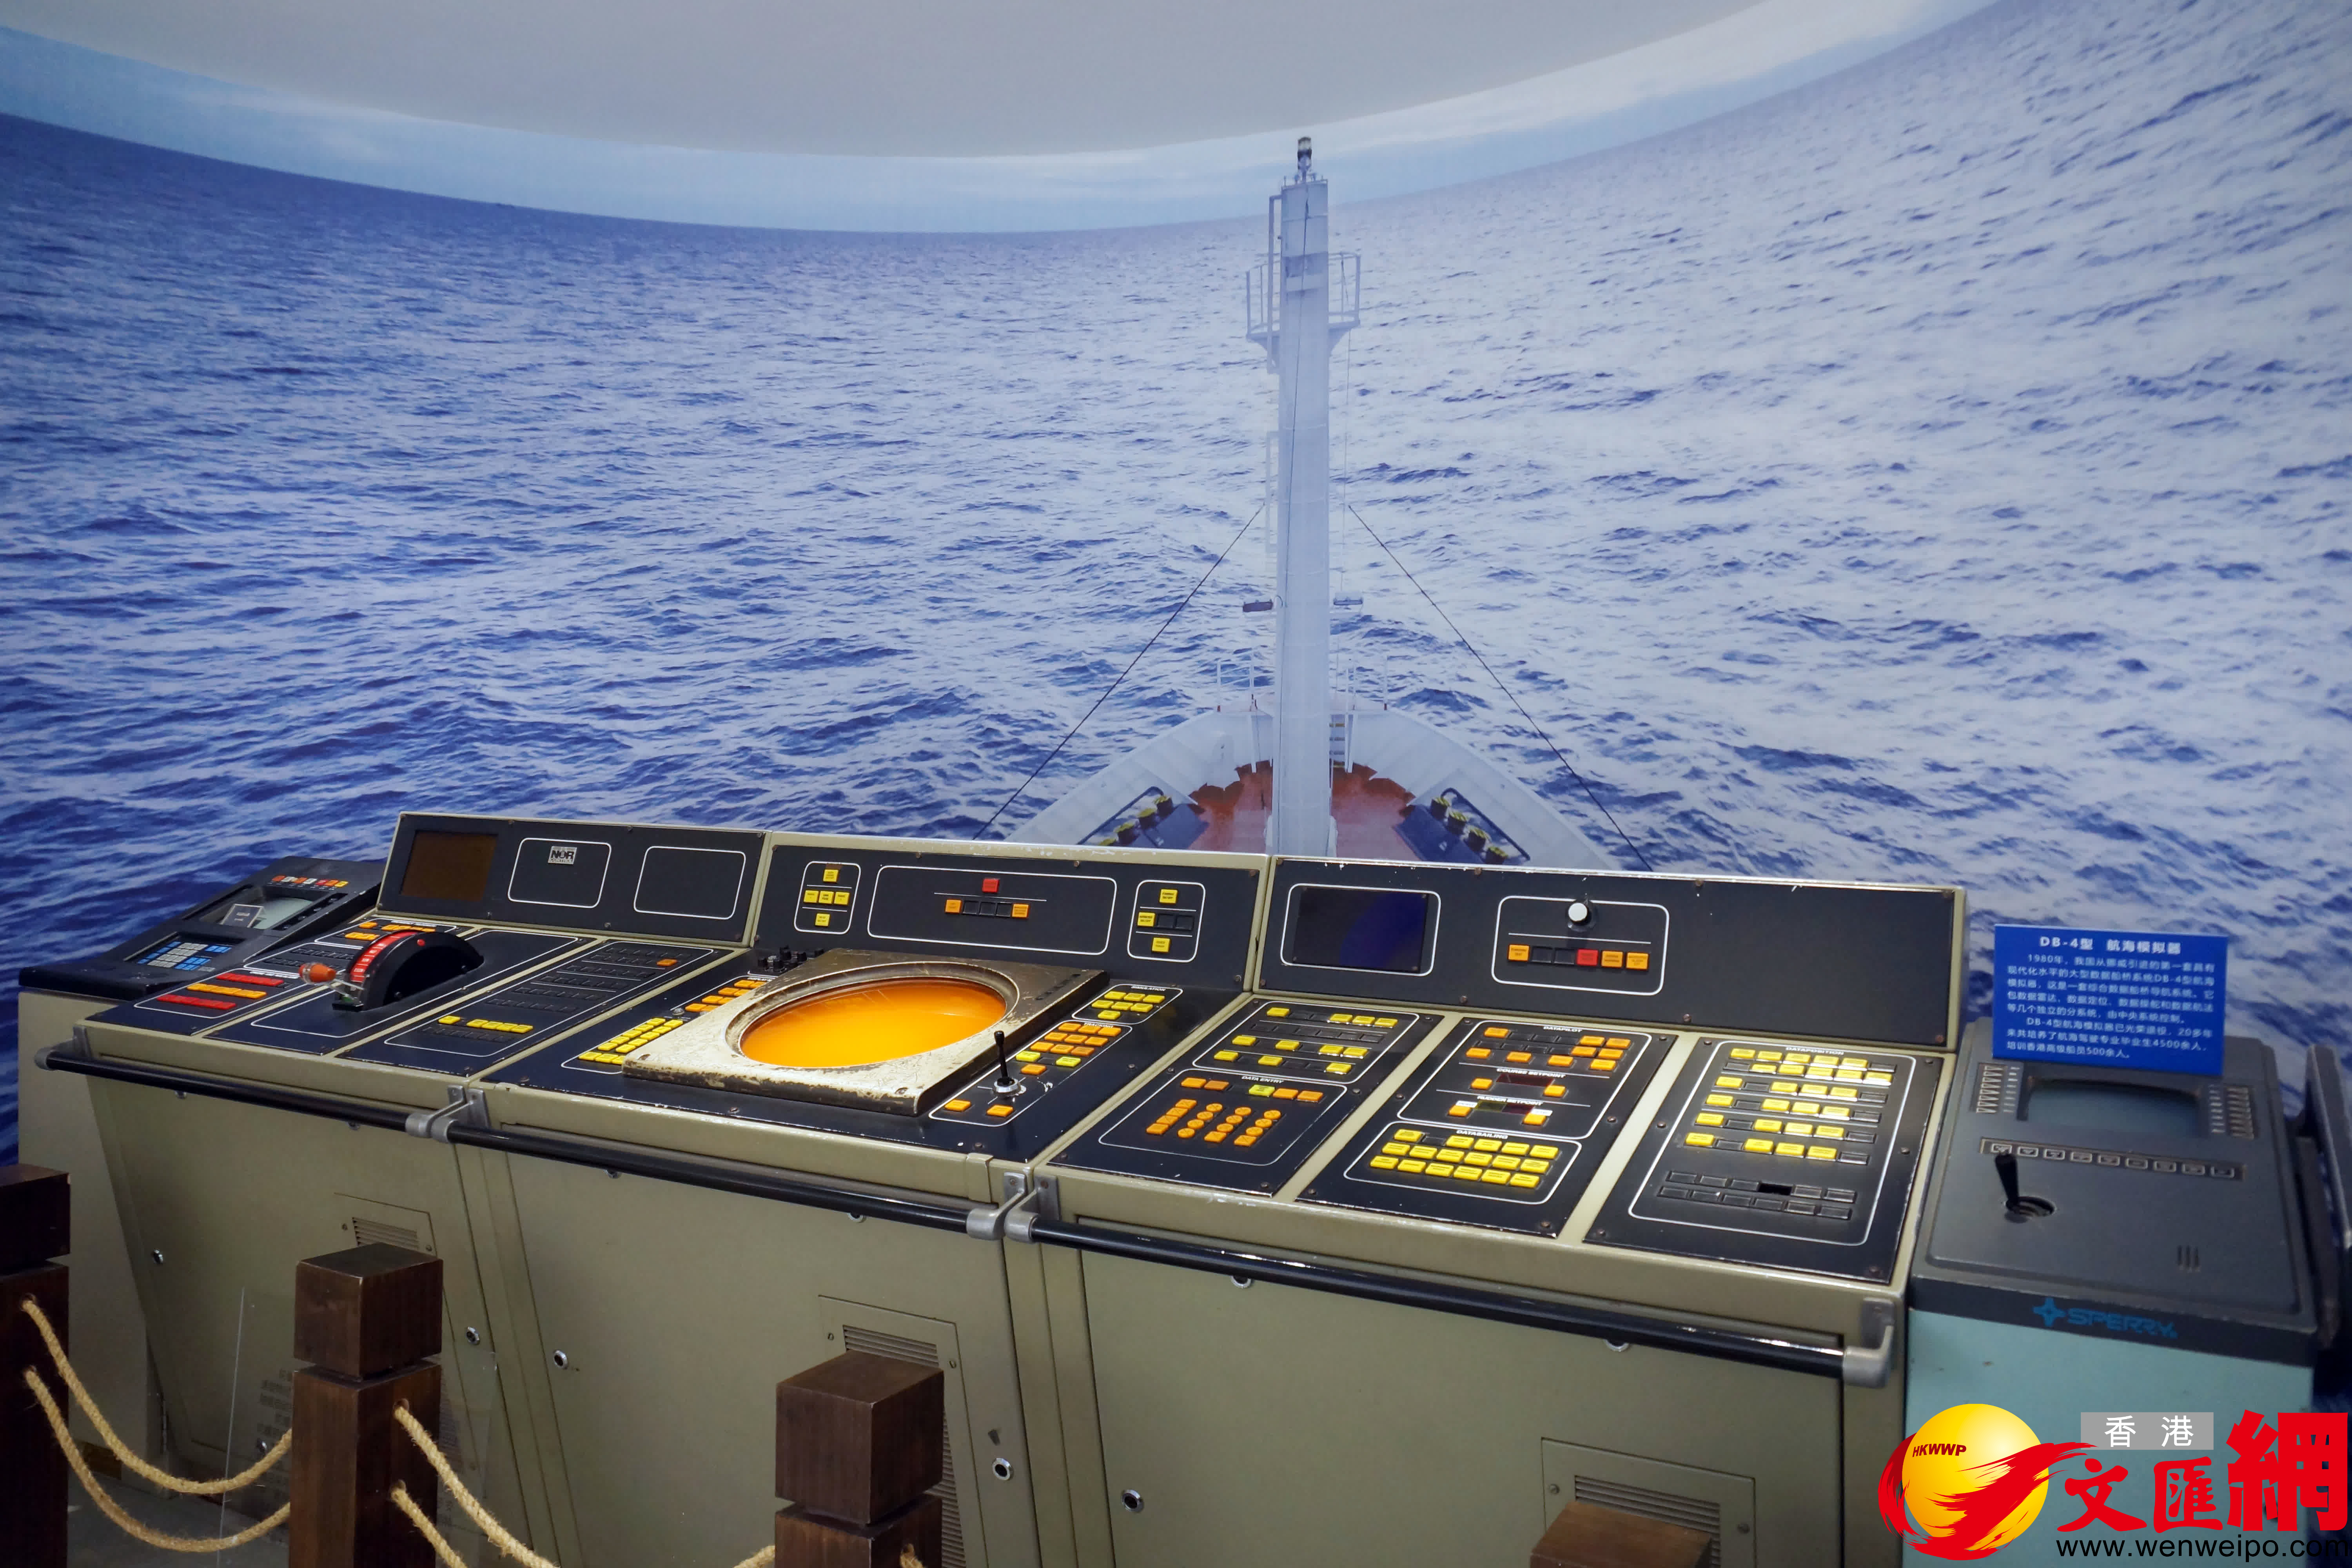 上世紀80年代培訓香港高級船員的航海模擬器